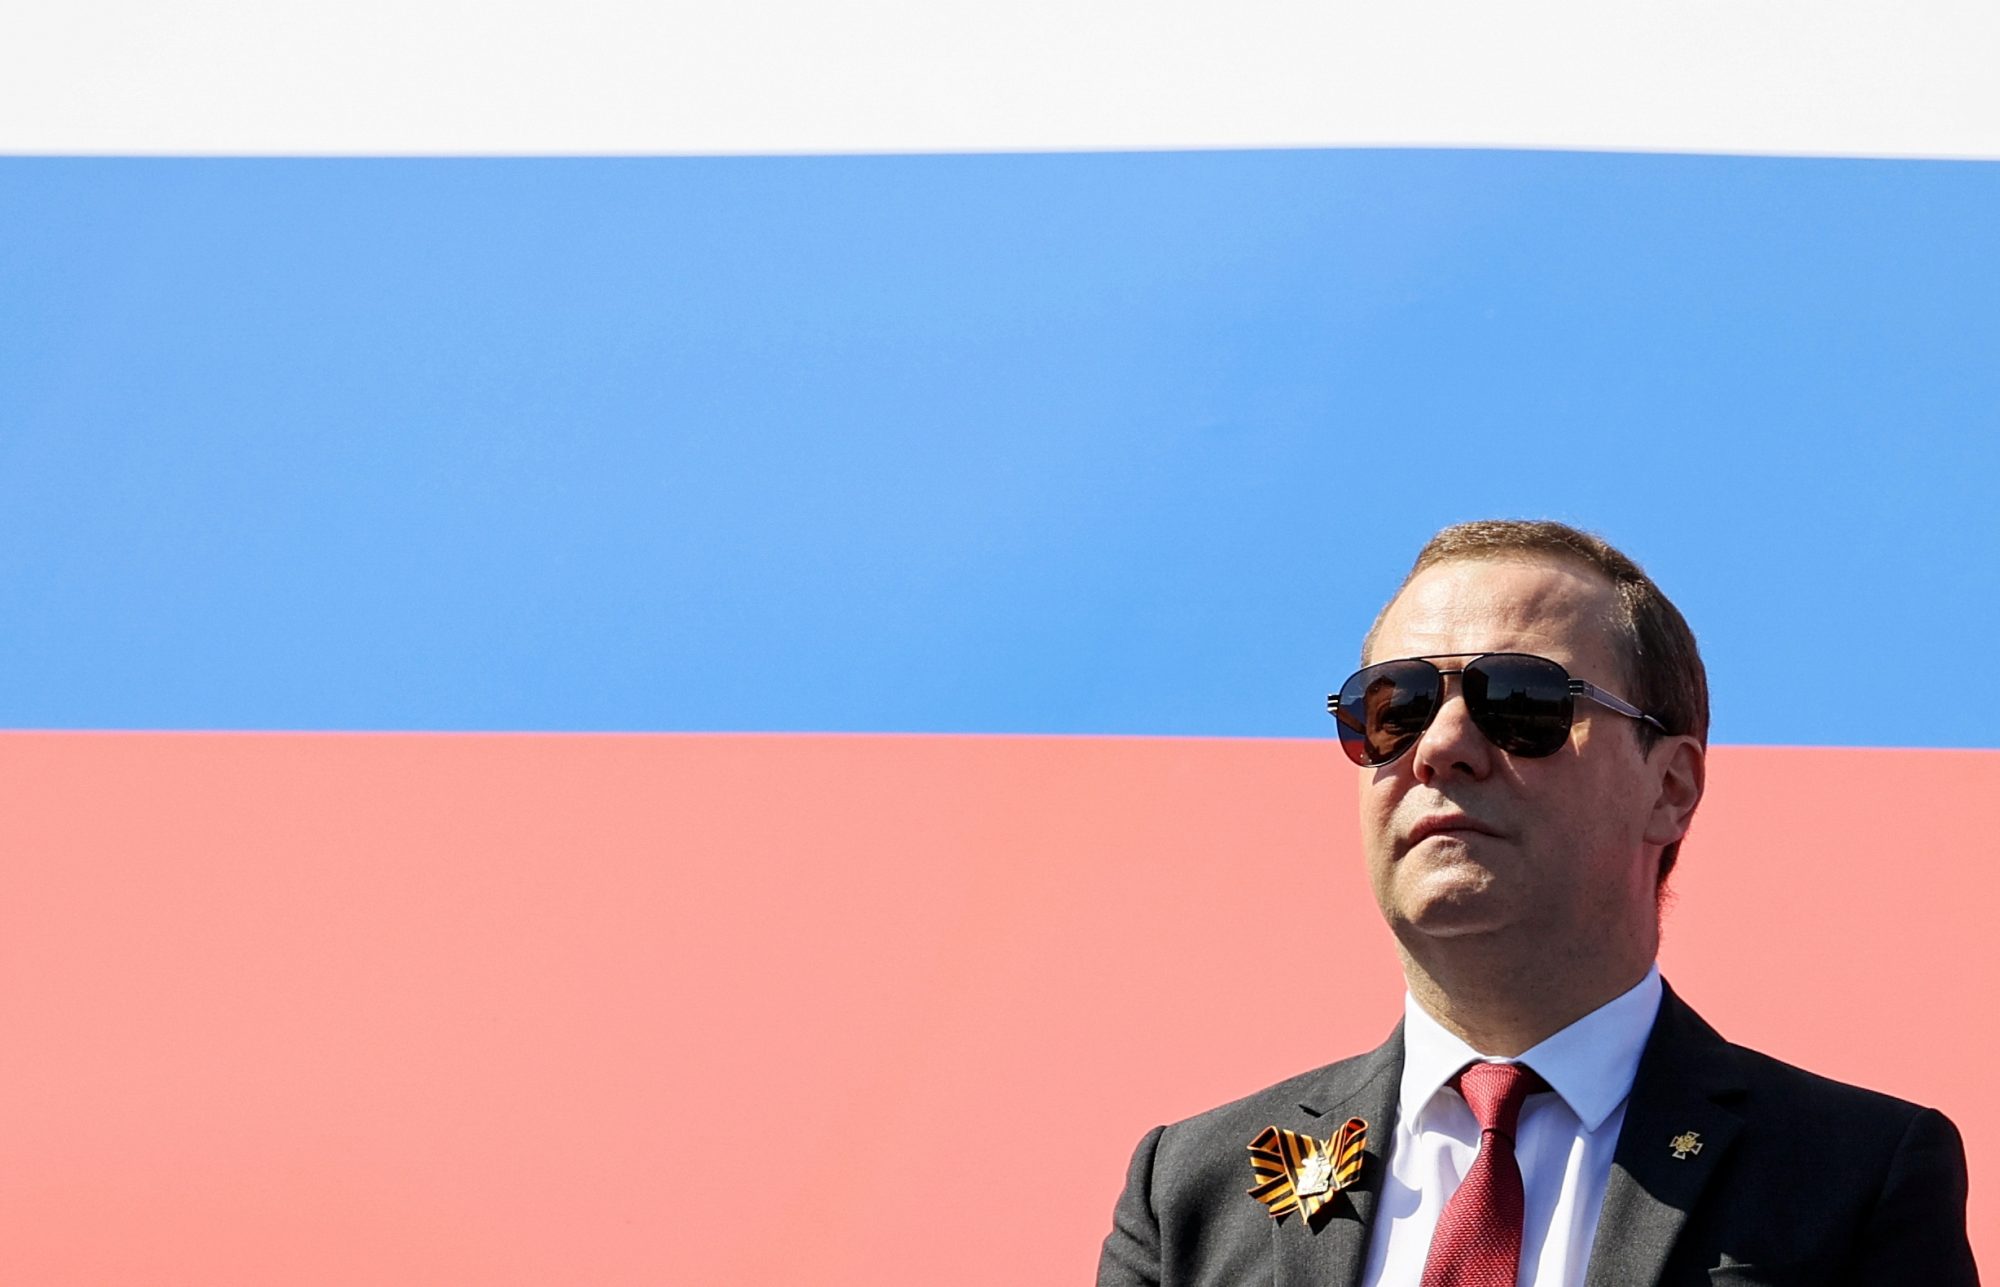 Medvedev fa il puro: "Vergognoso parlare di carri armati a Davos"